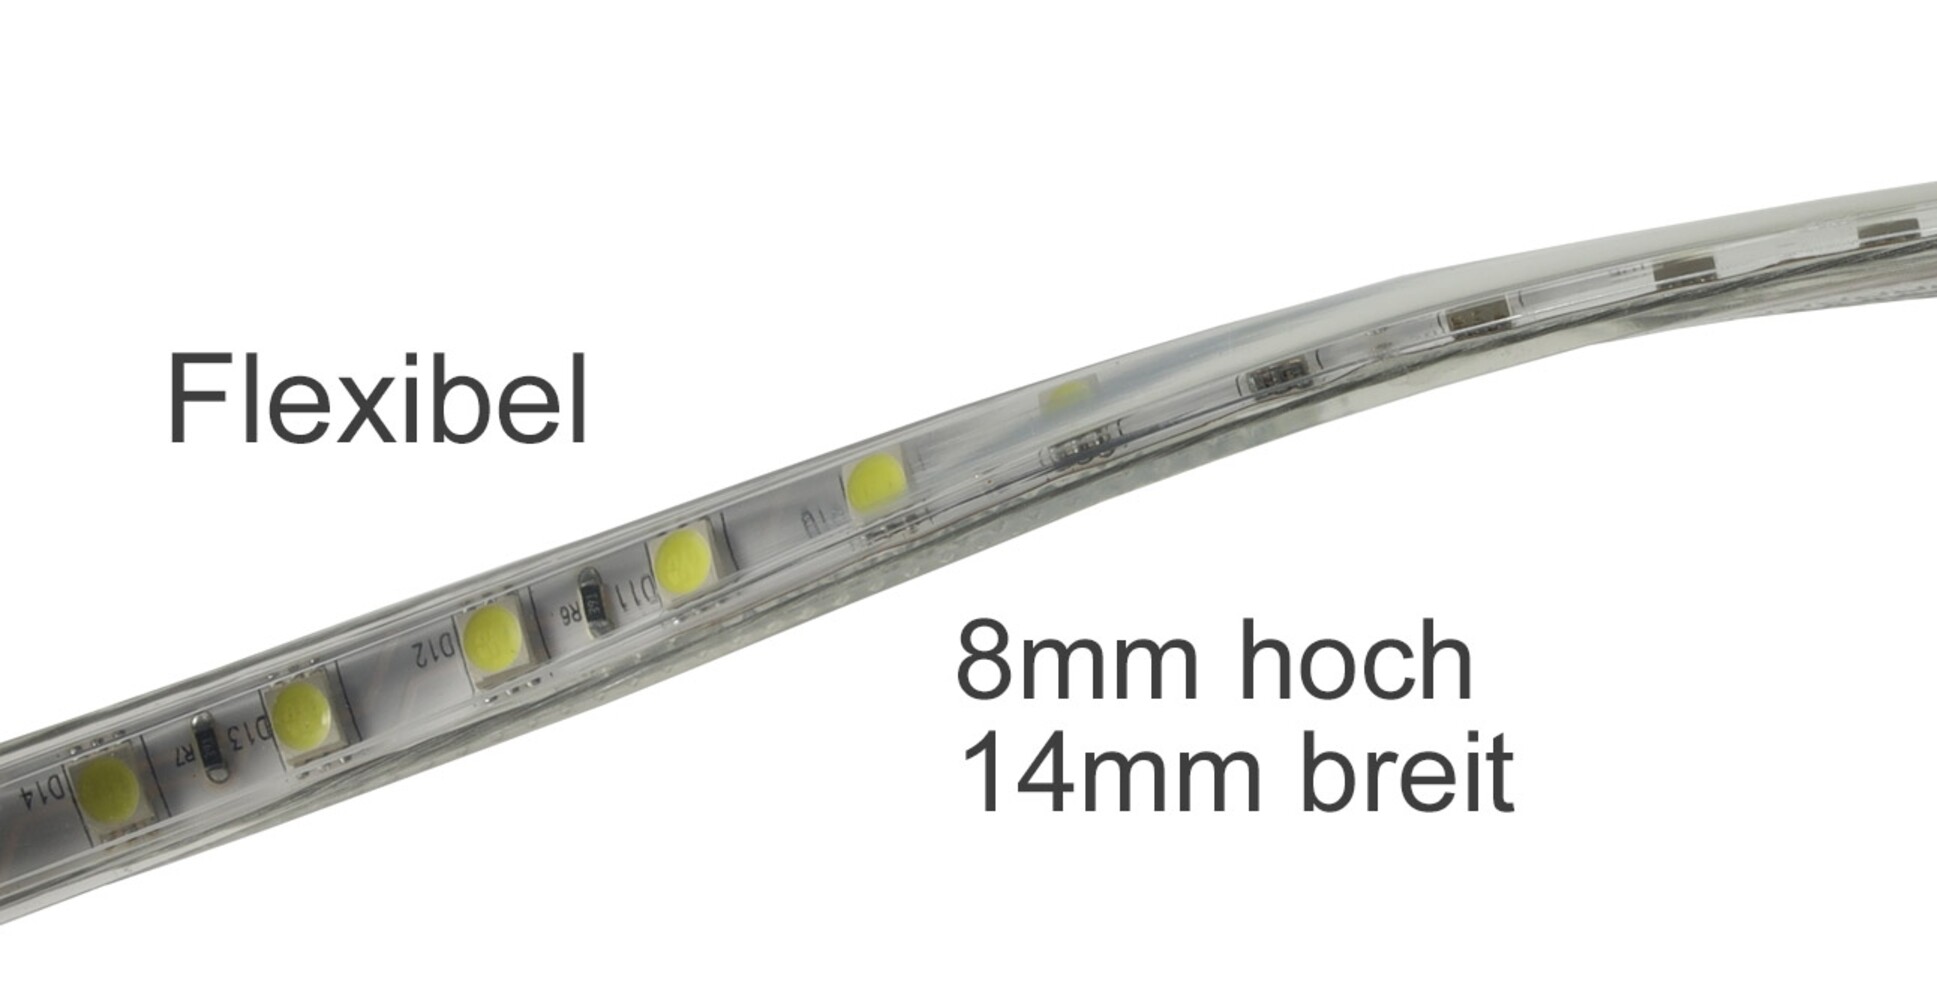 Leuchtender LED Streifen der Marke Chilitec in warmweiß mit hoher Helligkeit